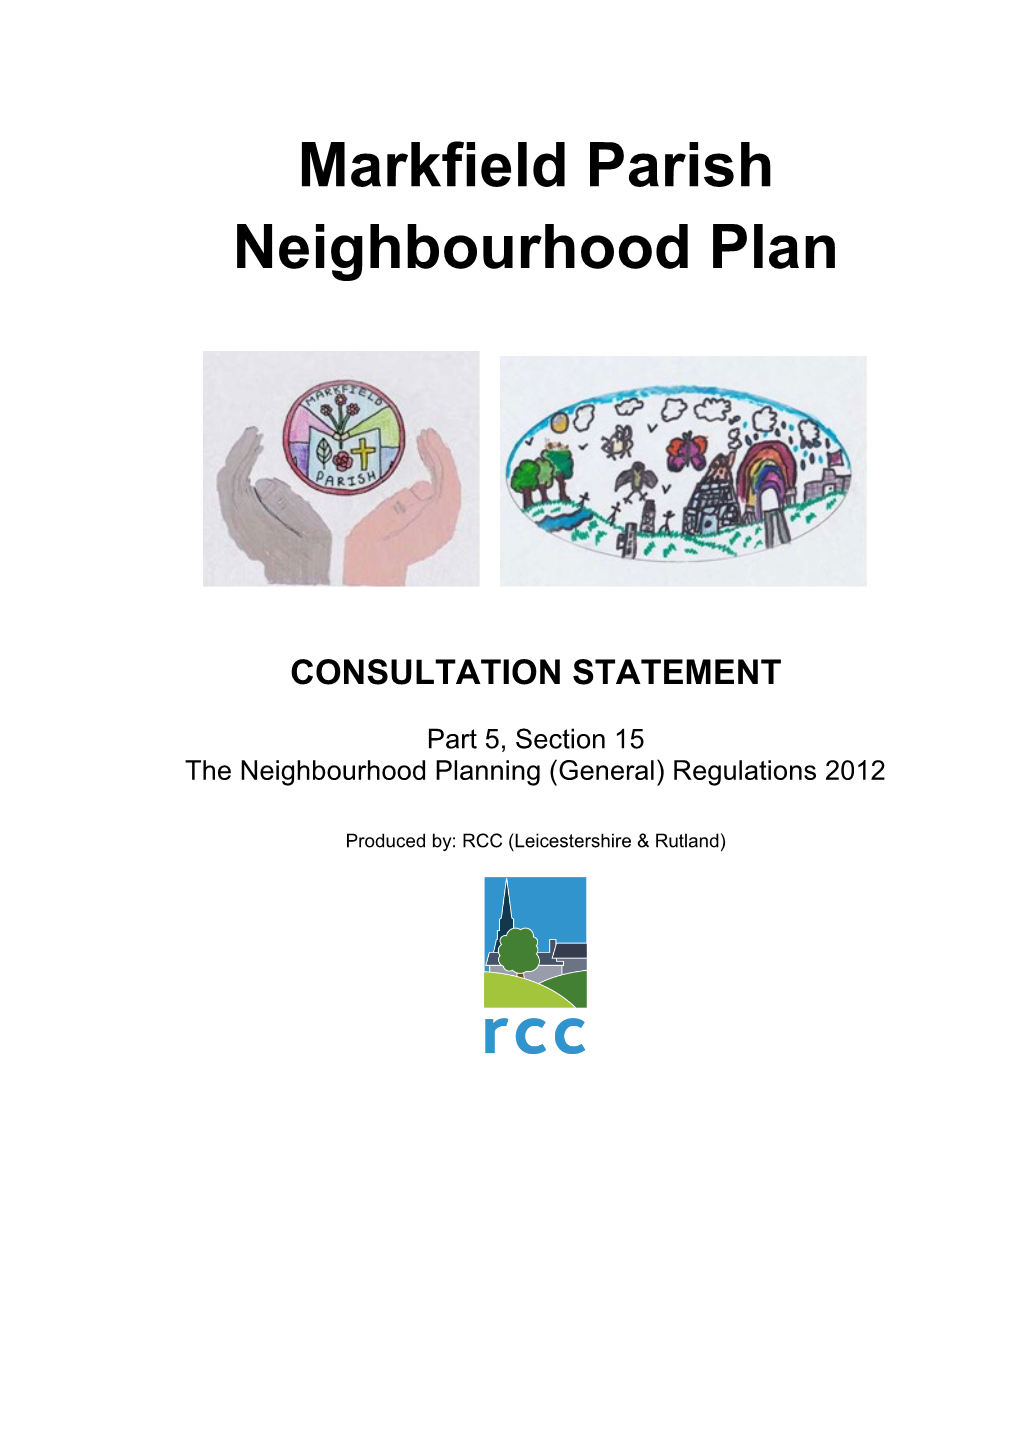 Markfield Parish Neighbourhood Plan